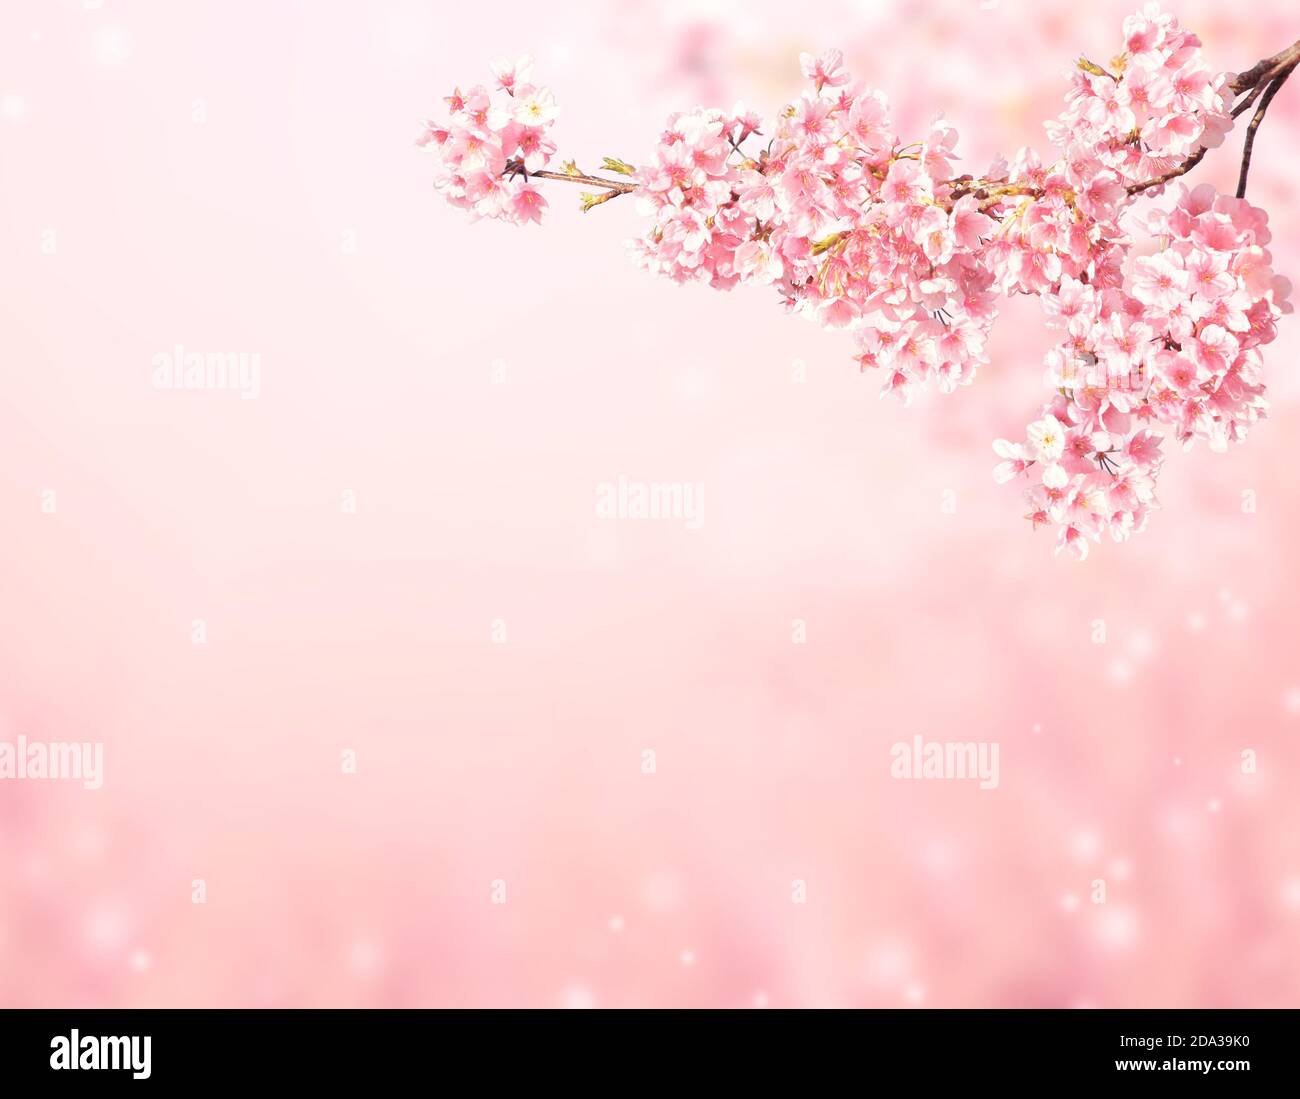 Bạn đã từng tự hỏi cảnh sắc mùa xuân sẽ như thế nào nếu được phủ kín bởi những cánh hoa anh đào hồng tuyệt đẹp? Bạn có thể tìm thấy câu trả lời trong hình ảnh tuyệt vời này với hàng nghìn cánh hoa anh đào hồng khoe sắc nở rộ.